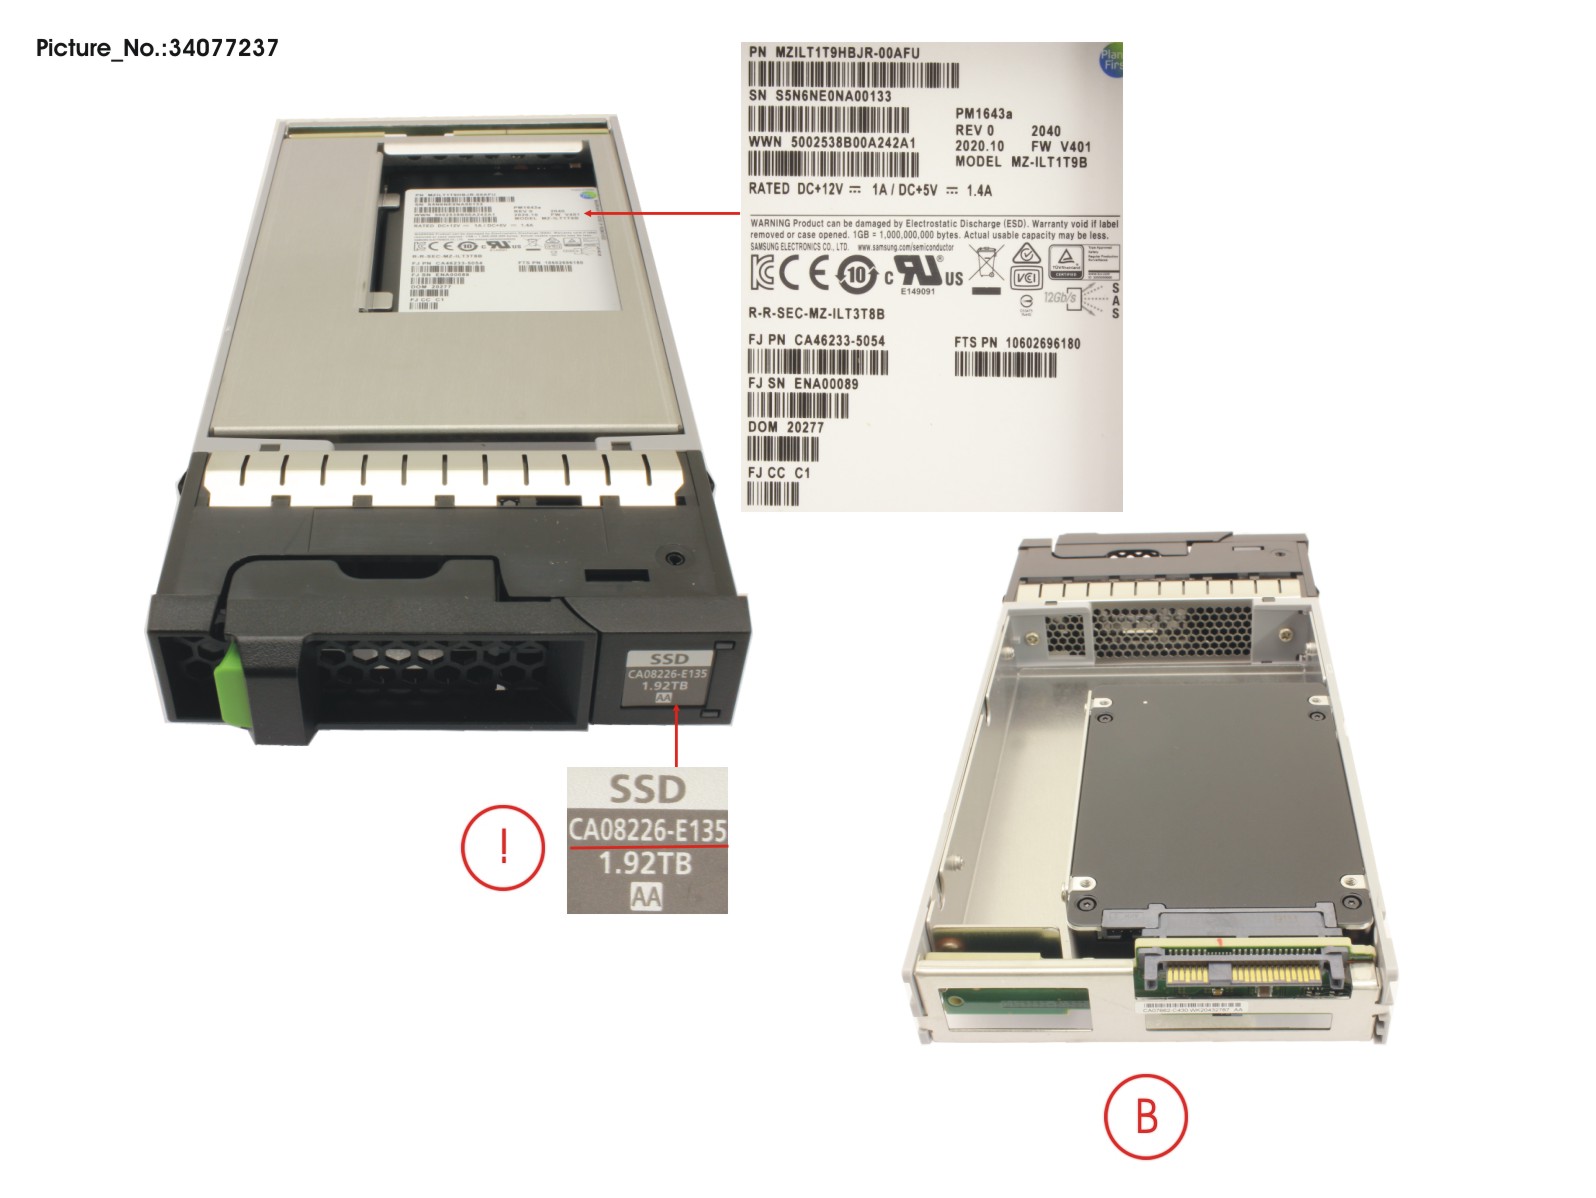 DX S4 MLC SSD SAS 3.5 1.92TB 12G